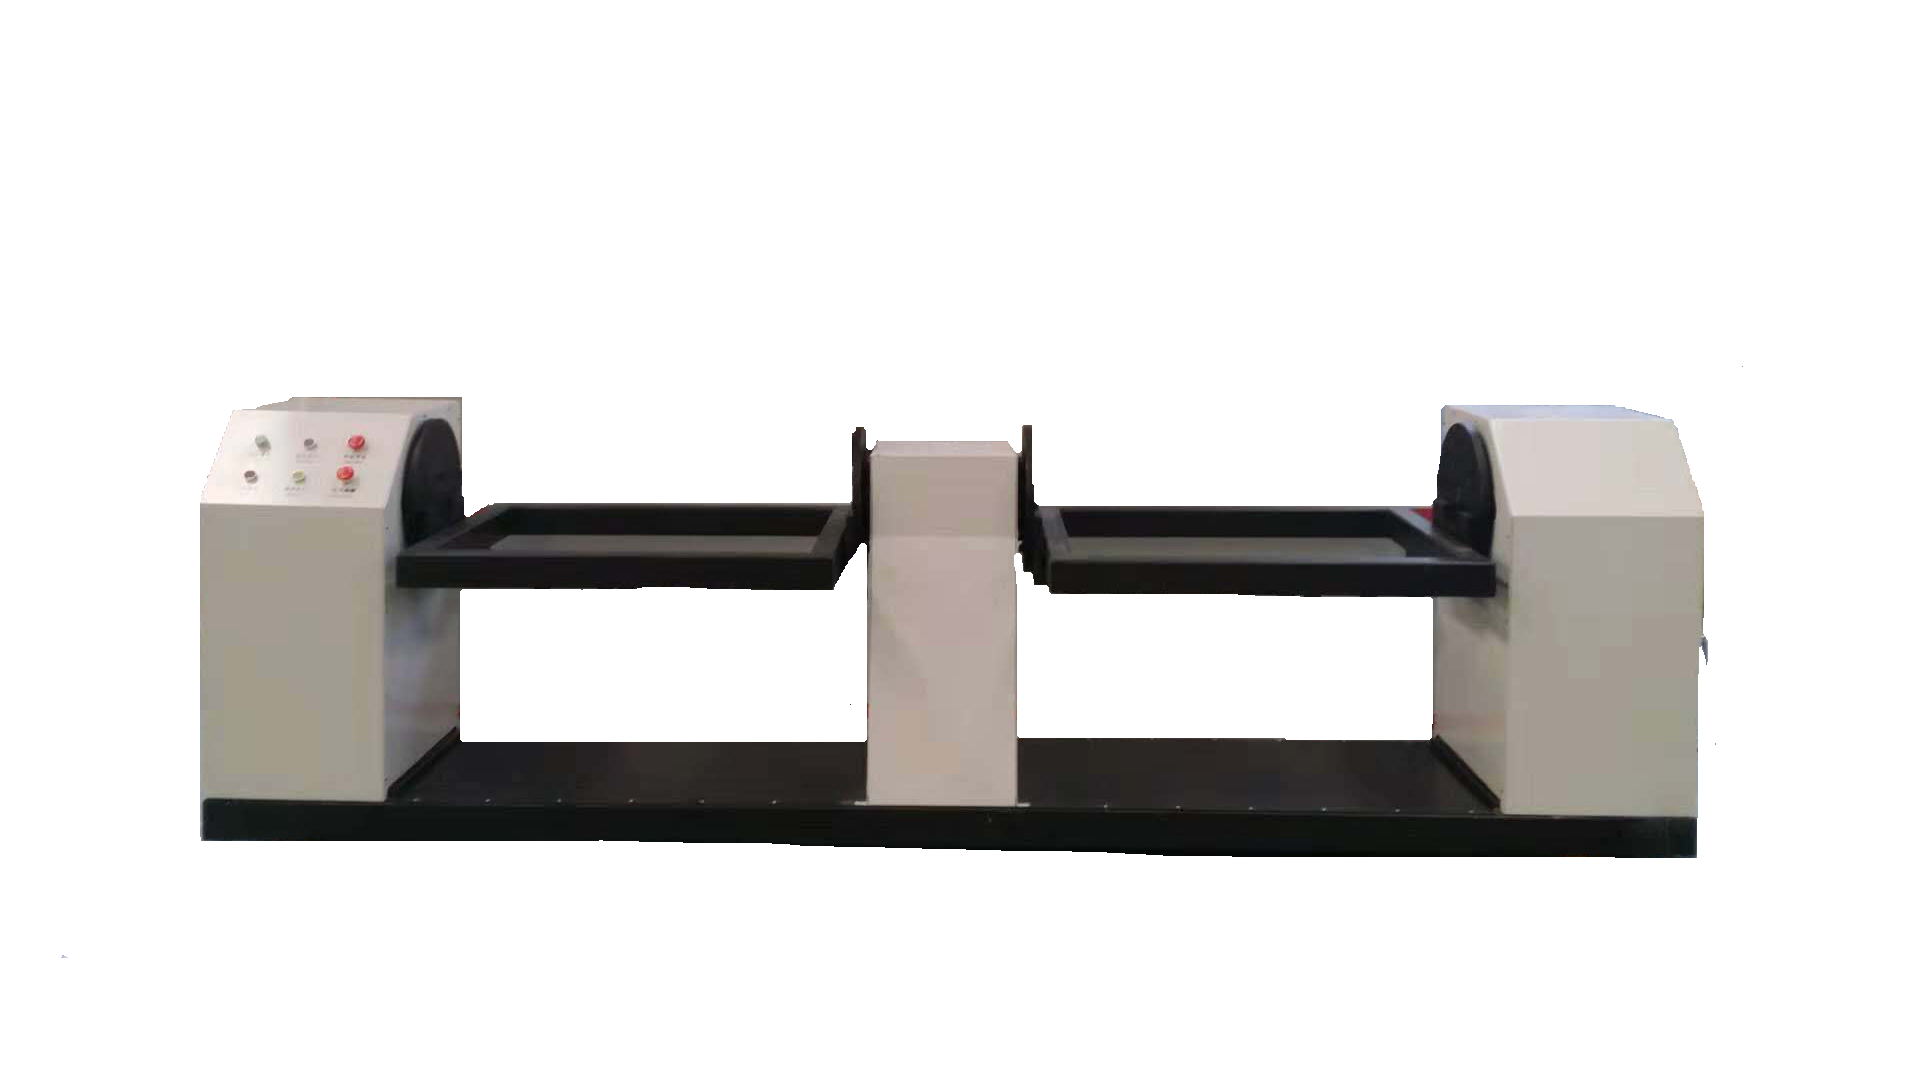 氩弧焊自动焊接机	凯沃智造	弧焊机器人	自动焊接机器	自动翻转设备